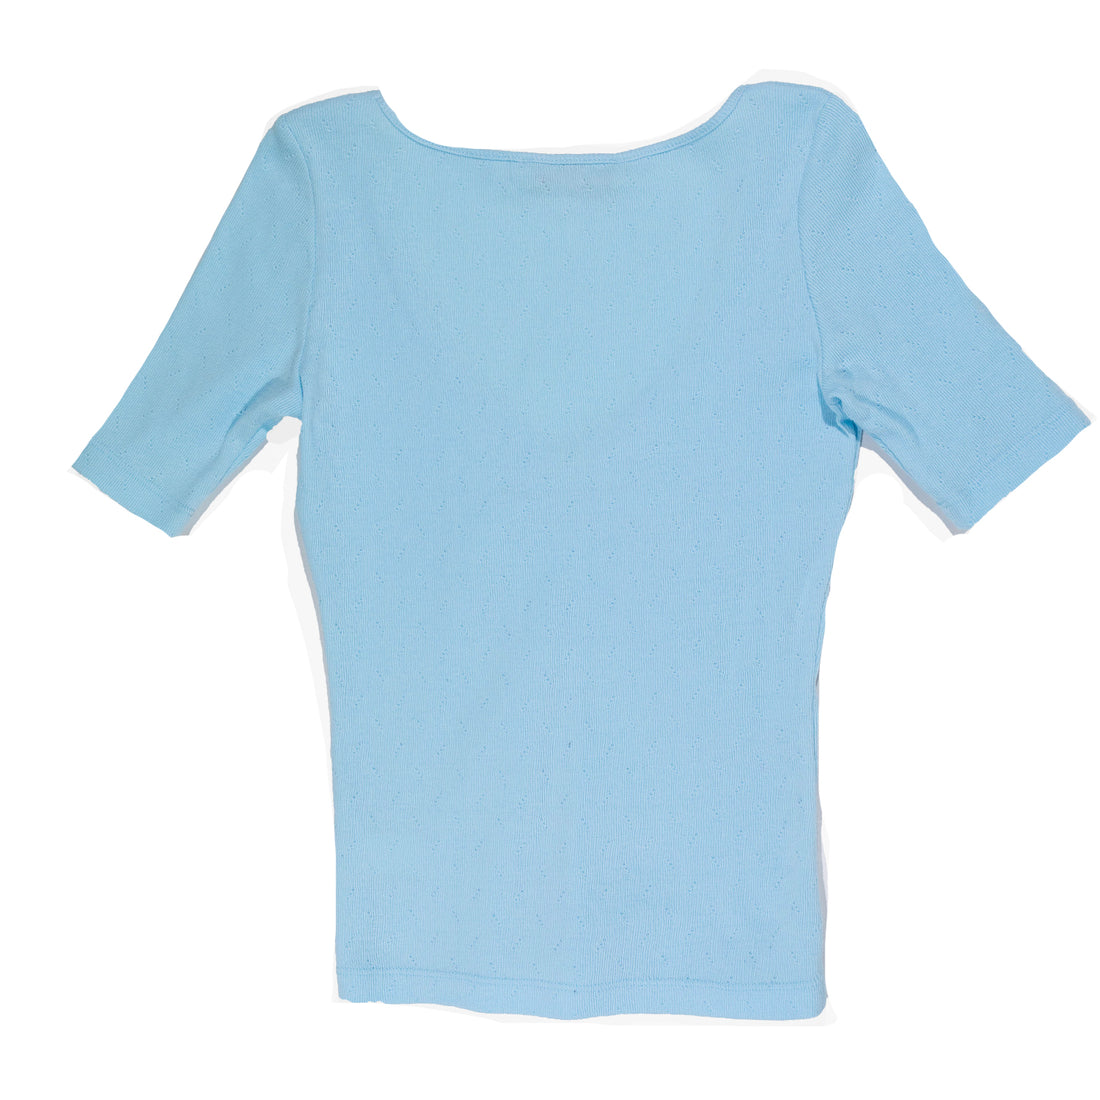 Carleen Lara Shirt in Blue Pointelle